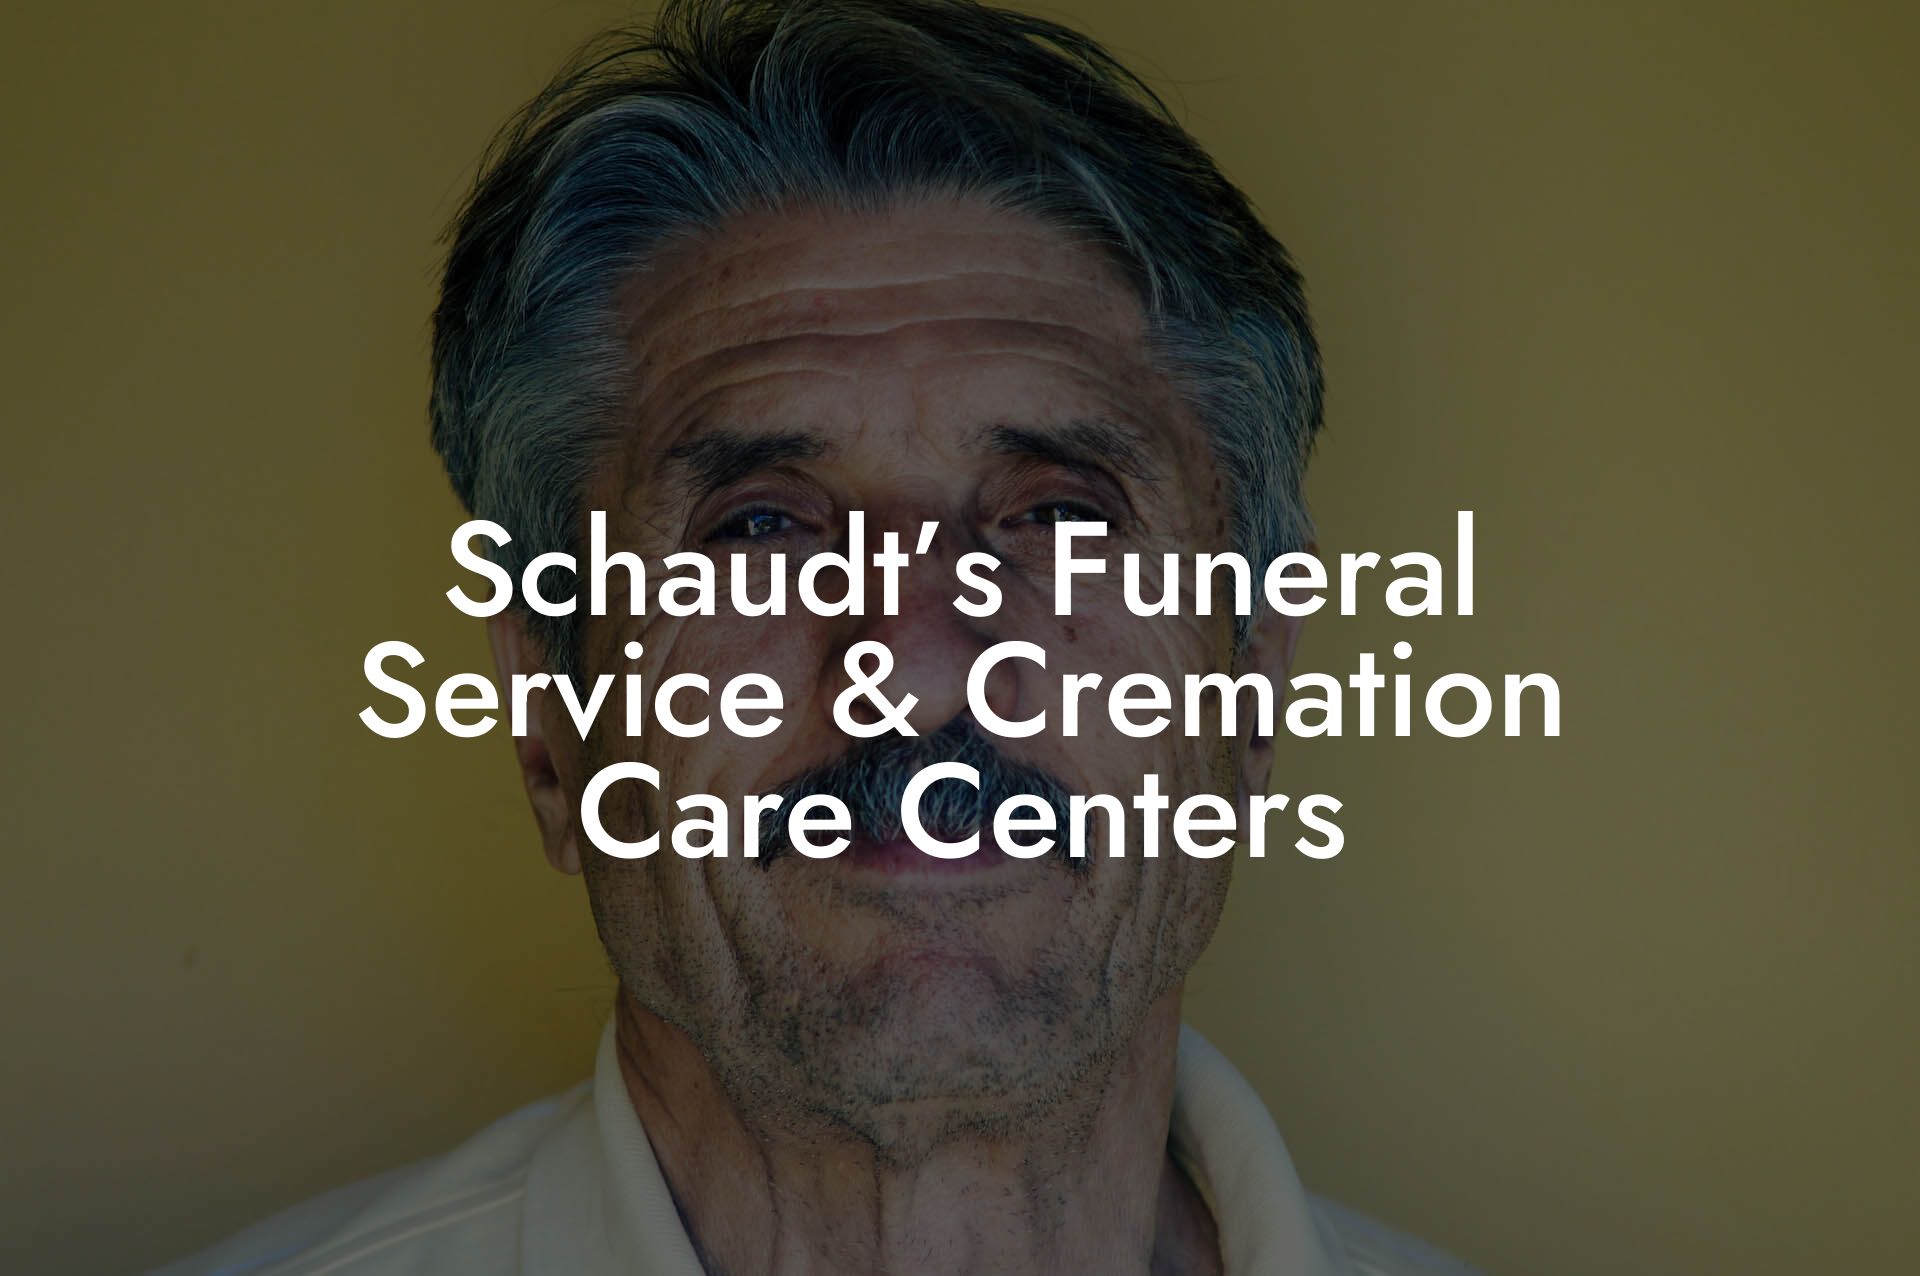 Schaudt’s Funeral Service & Cremation Care Centers